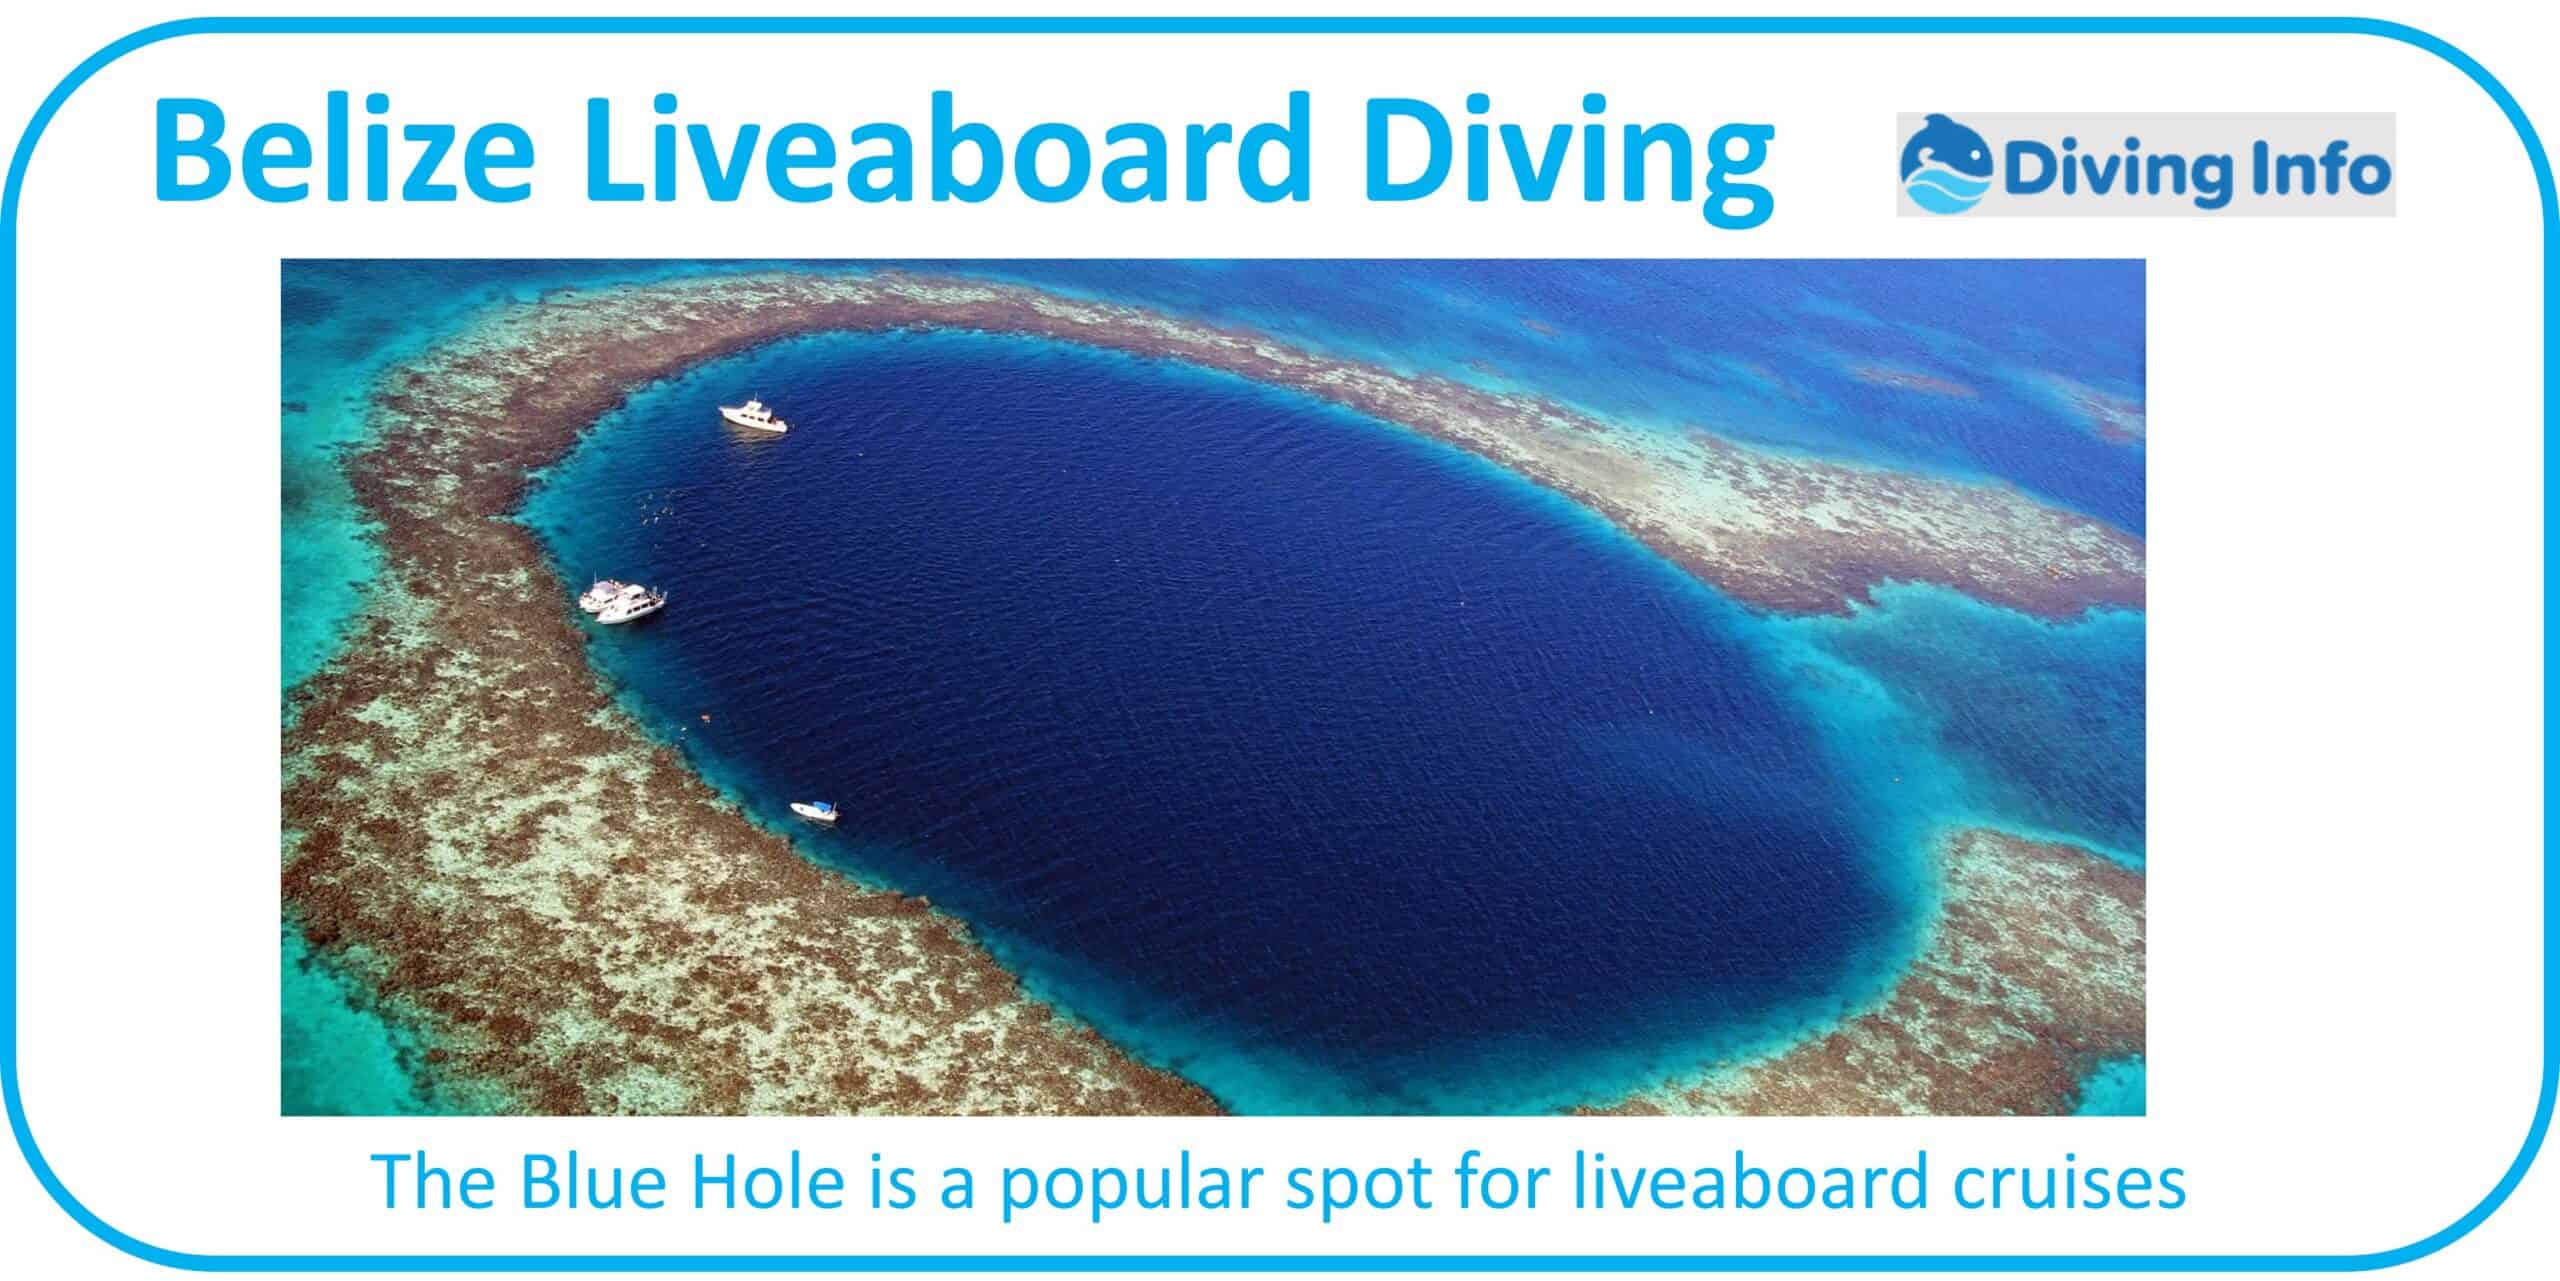 Belize Liveaboard Diving on the Barrier Reef